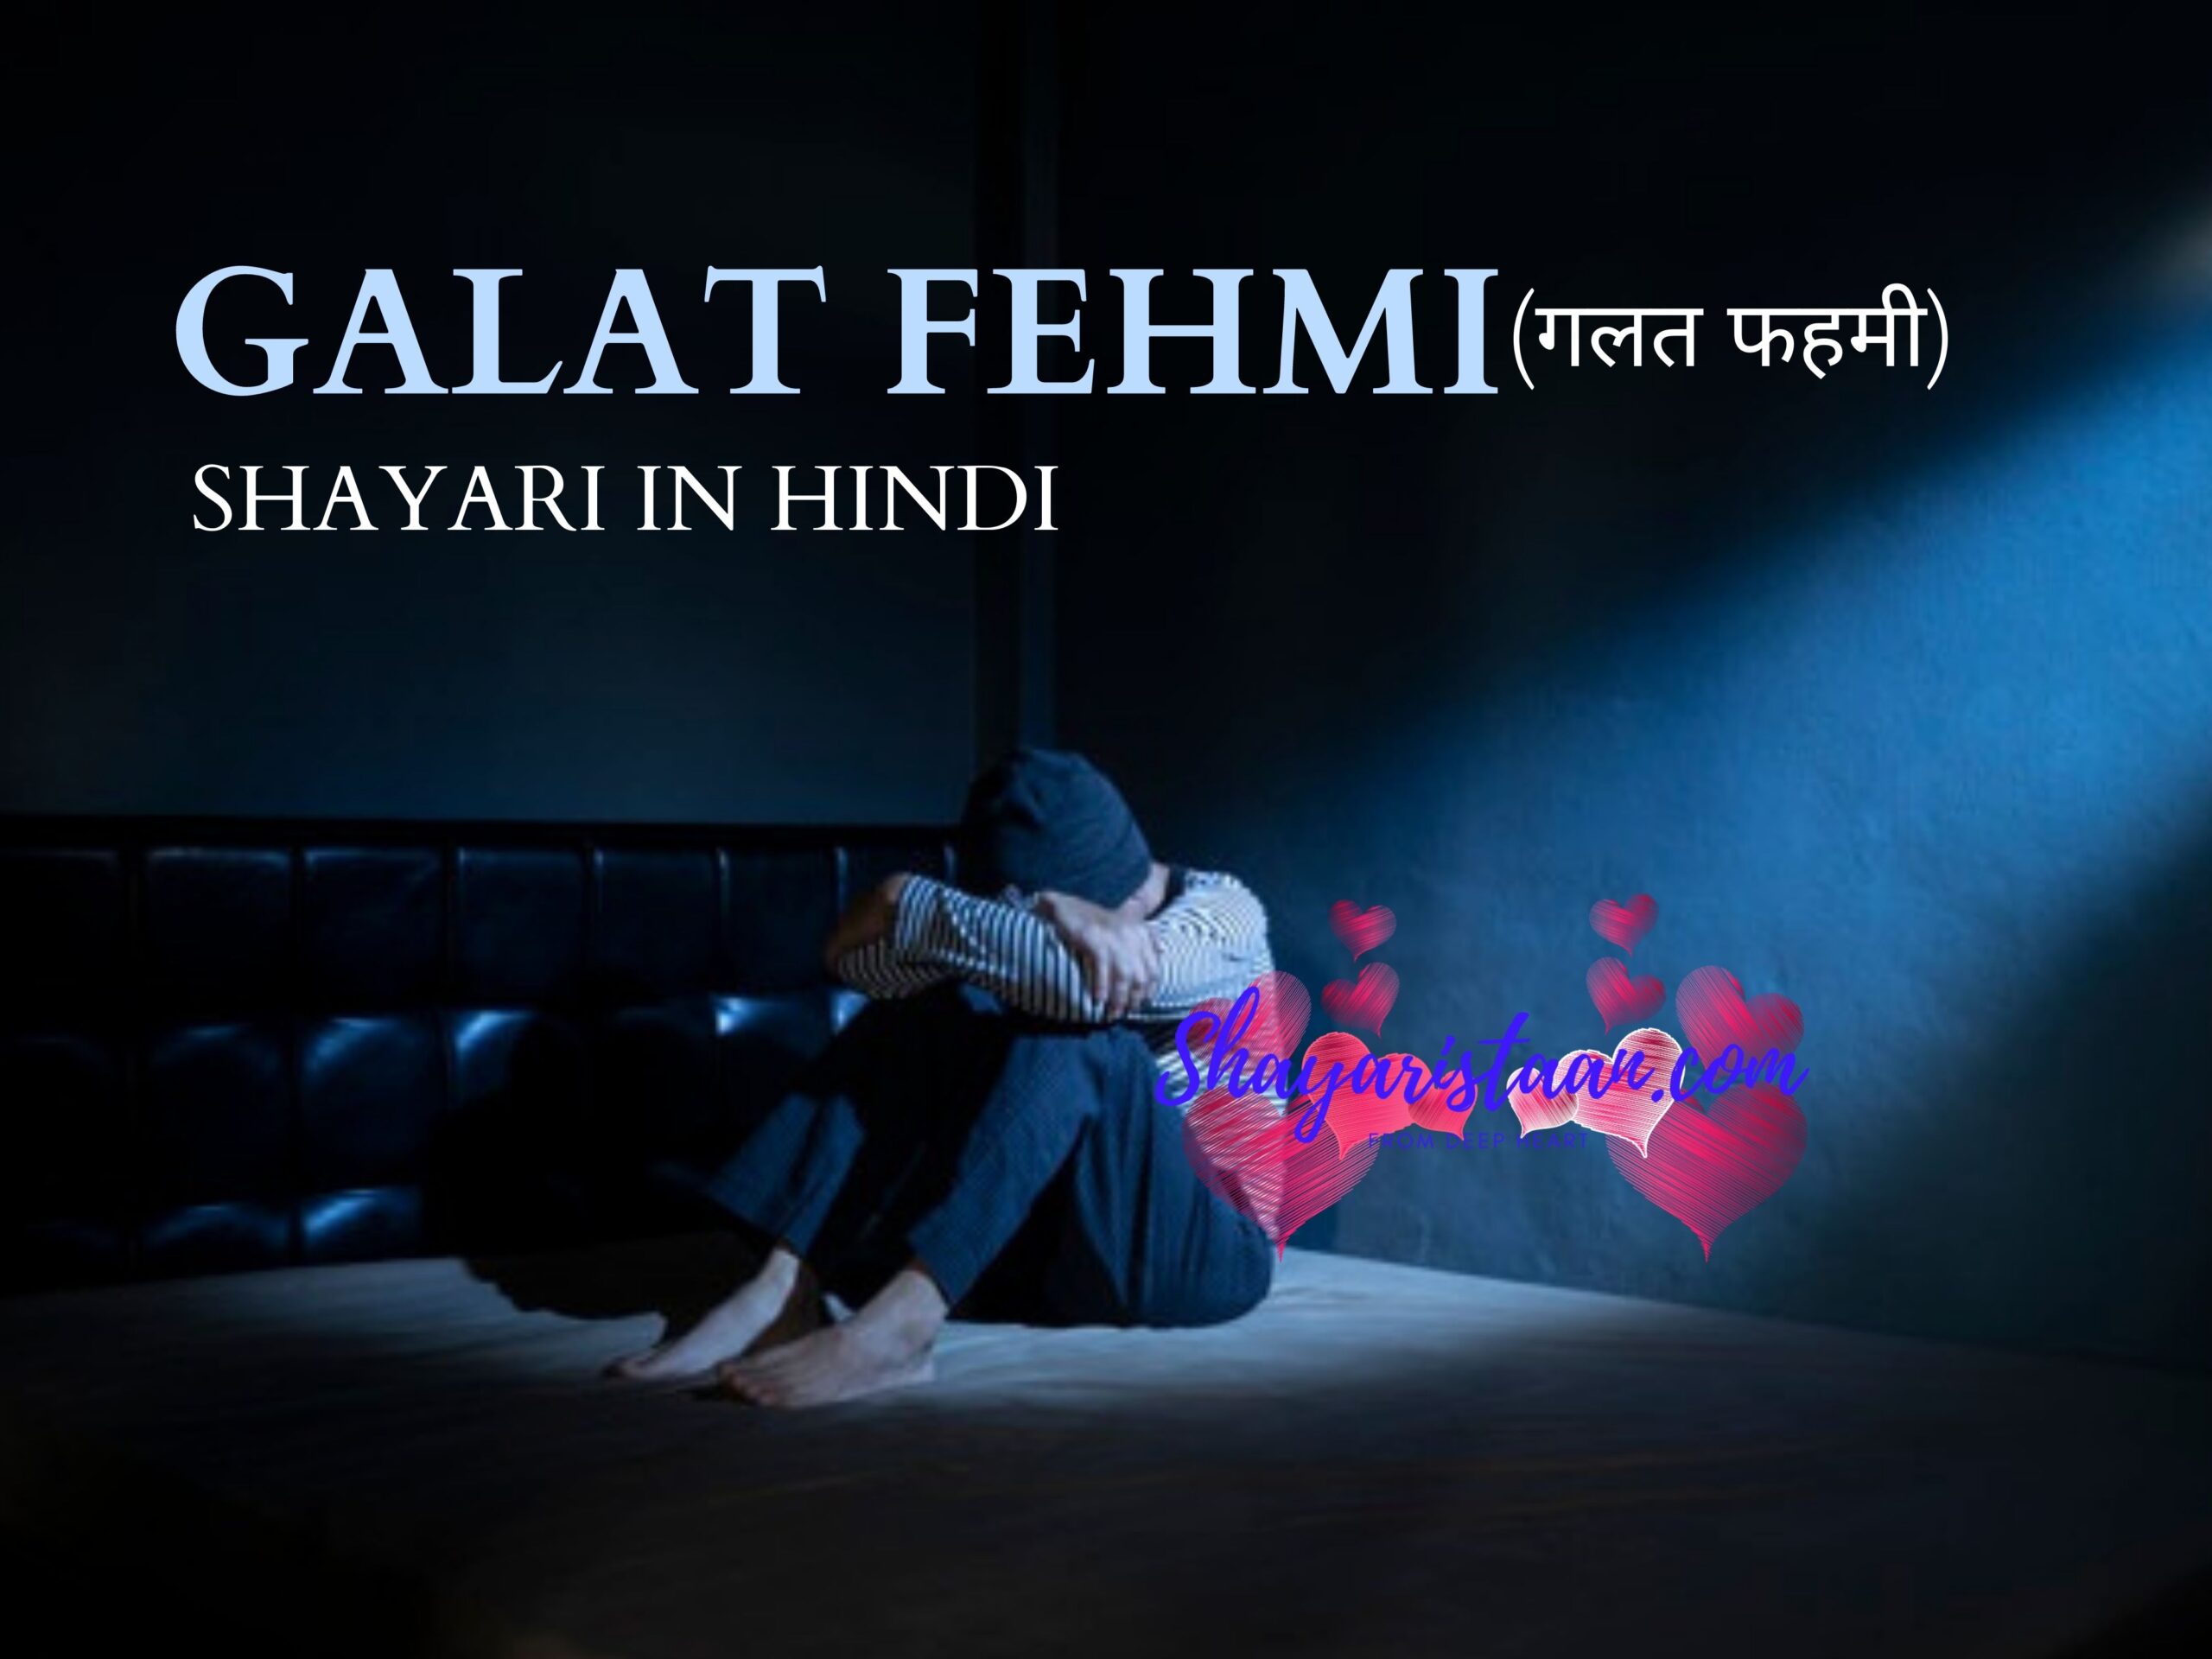 galat fehmi shayari in hindi